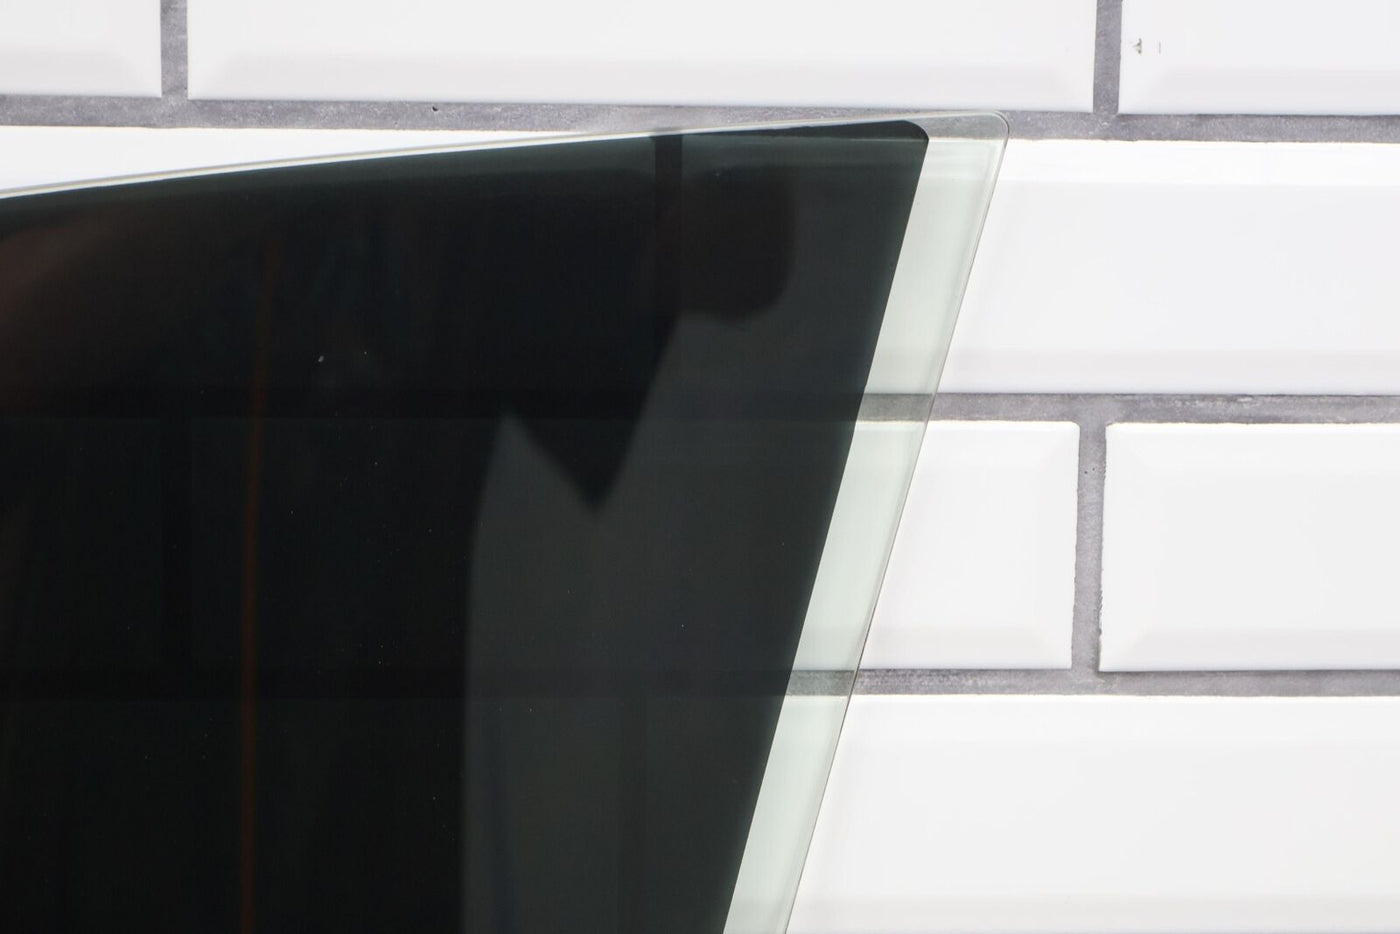 06-12 Bentley Flying Spur Right Passenger Front Door Window Glass (Self Tint)